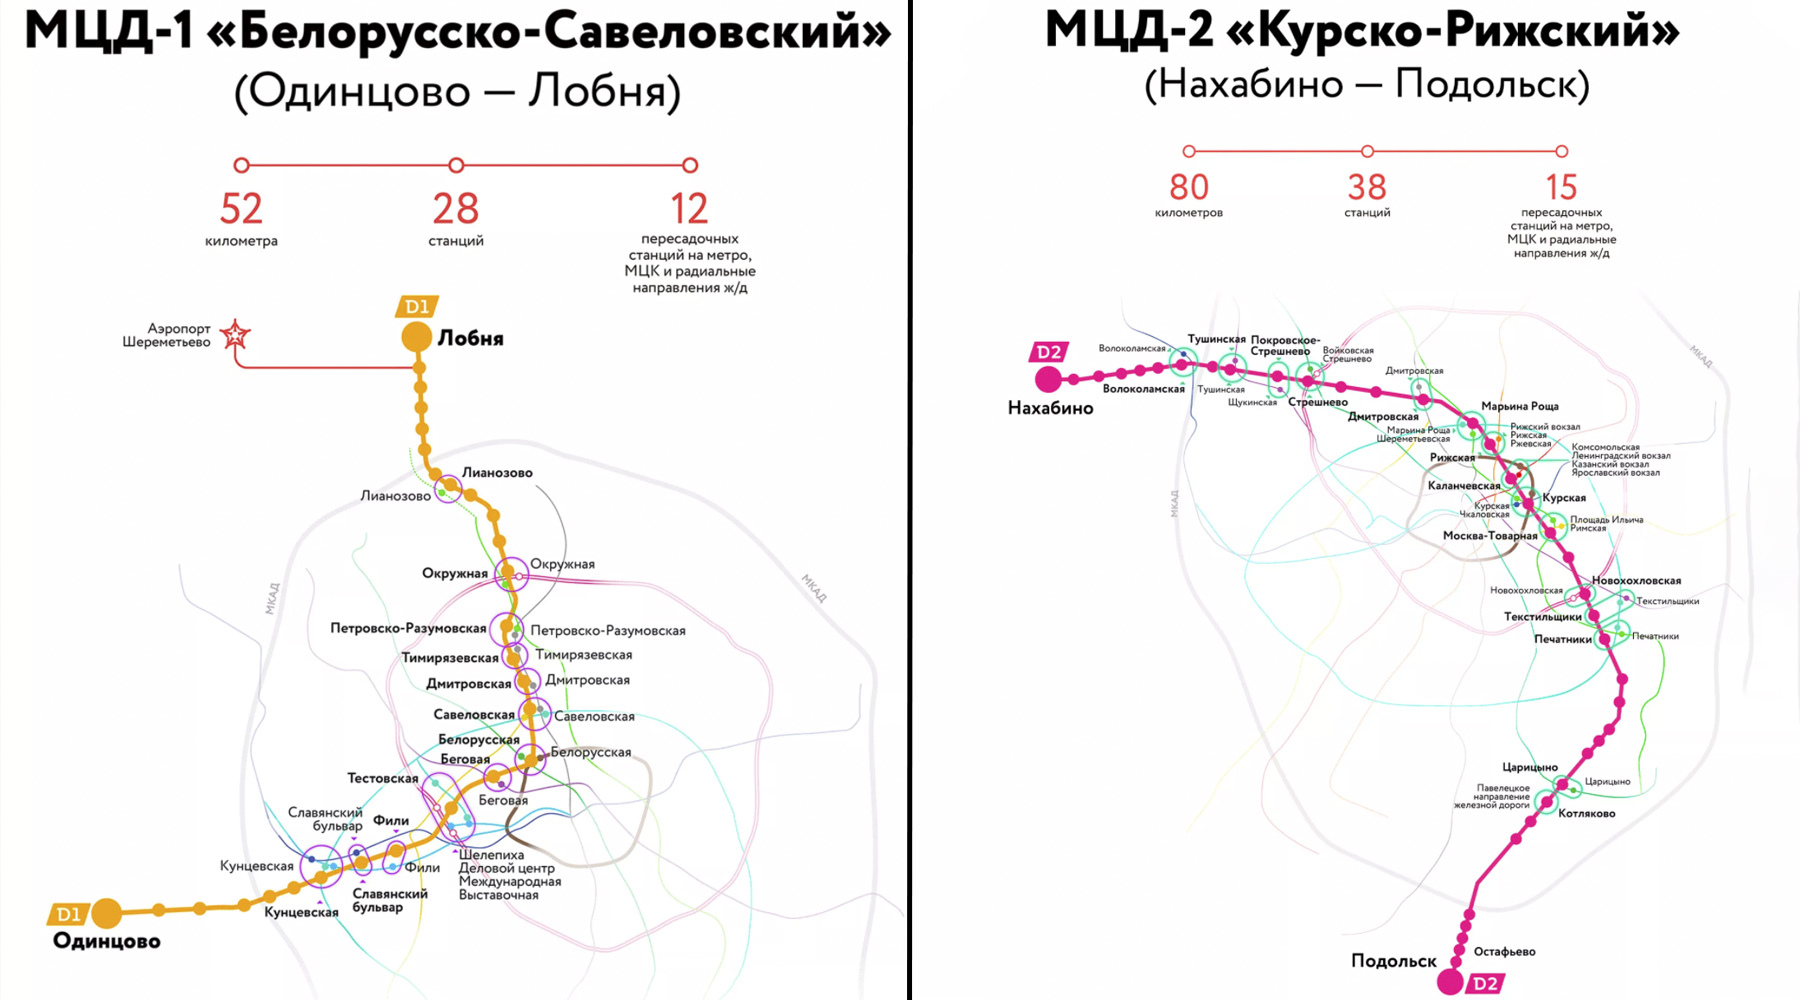 Как добраться до одинцово из москвы. МЦД-2 схема станций. Схема метро Москвы d2. МЦД-1 схема станций. МЦД Подольск схема станций.